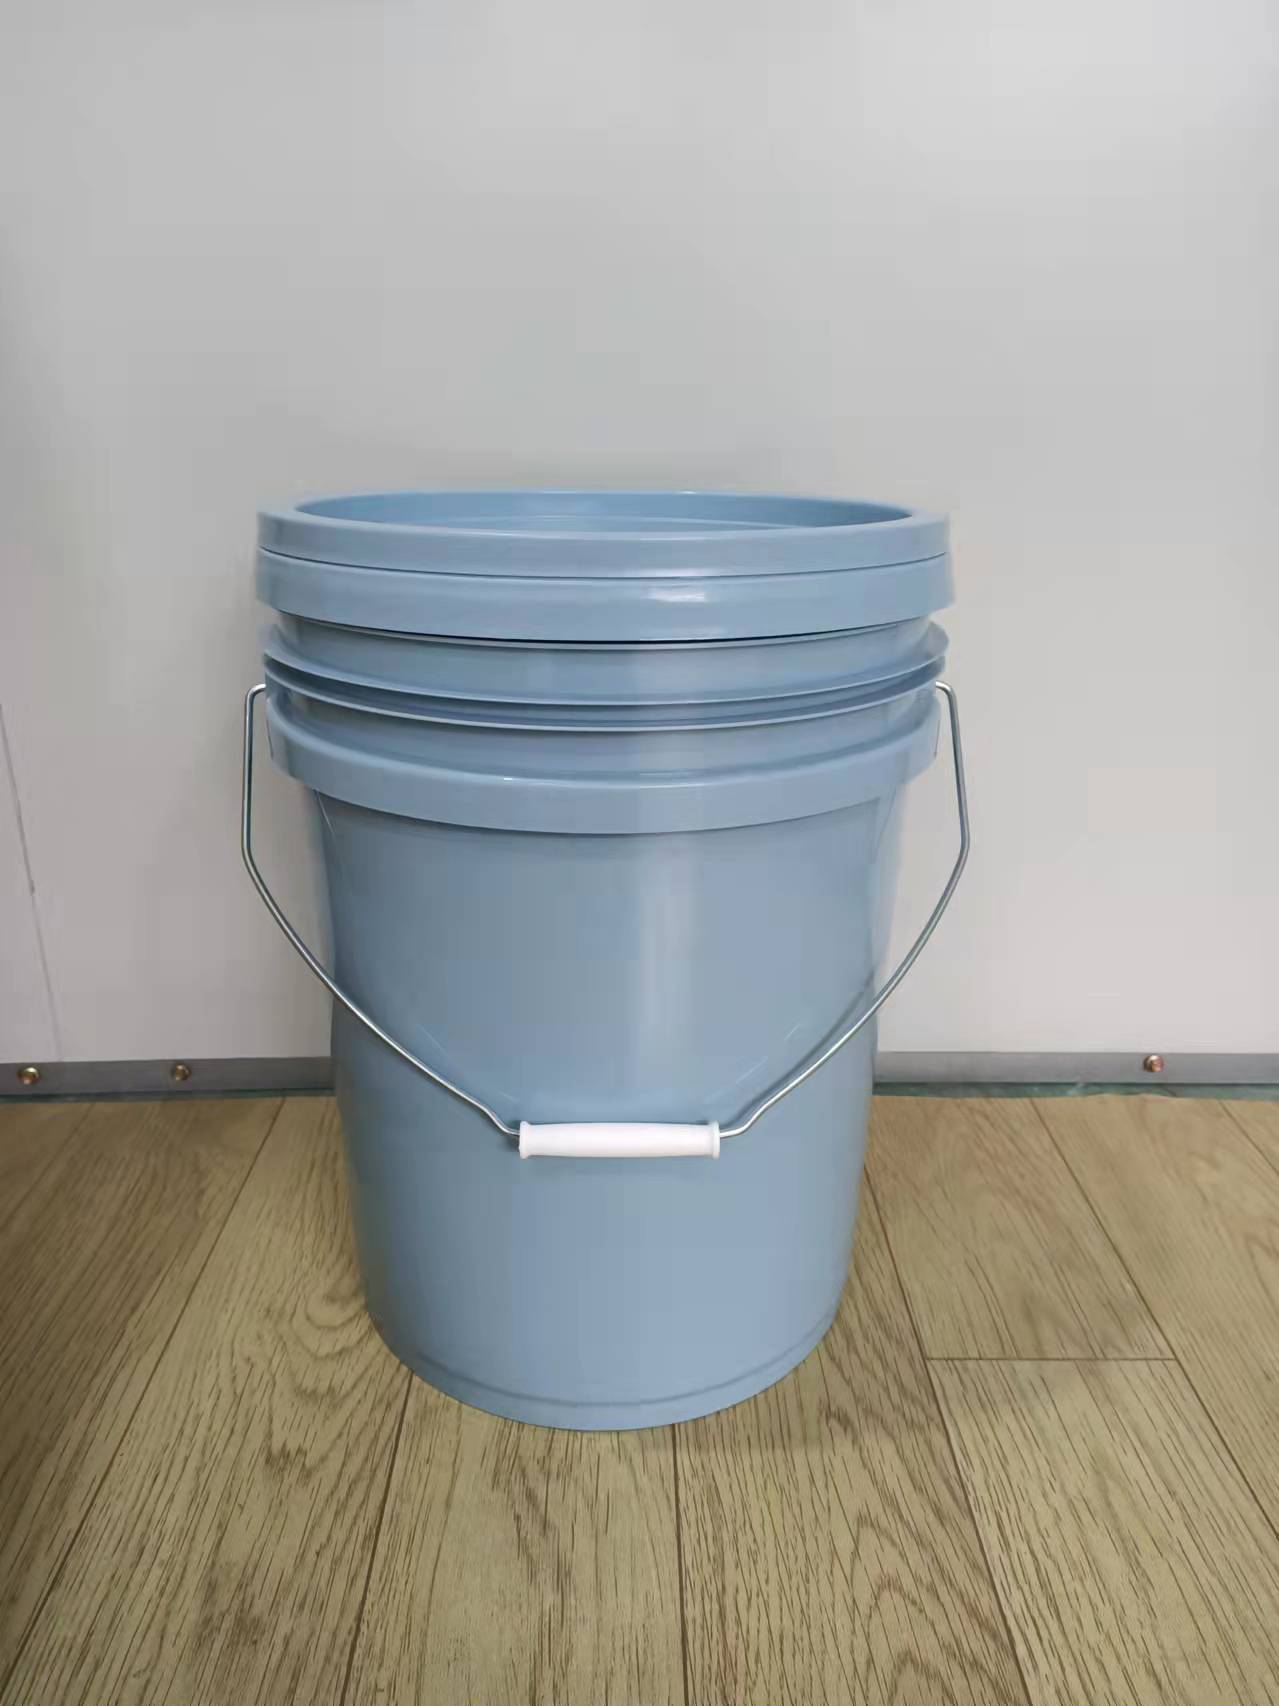 常州阳明塑料包装桶桶厂家生产销售化工原料桶涂料桶饲料桶粘胶剂桶机油桶